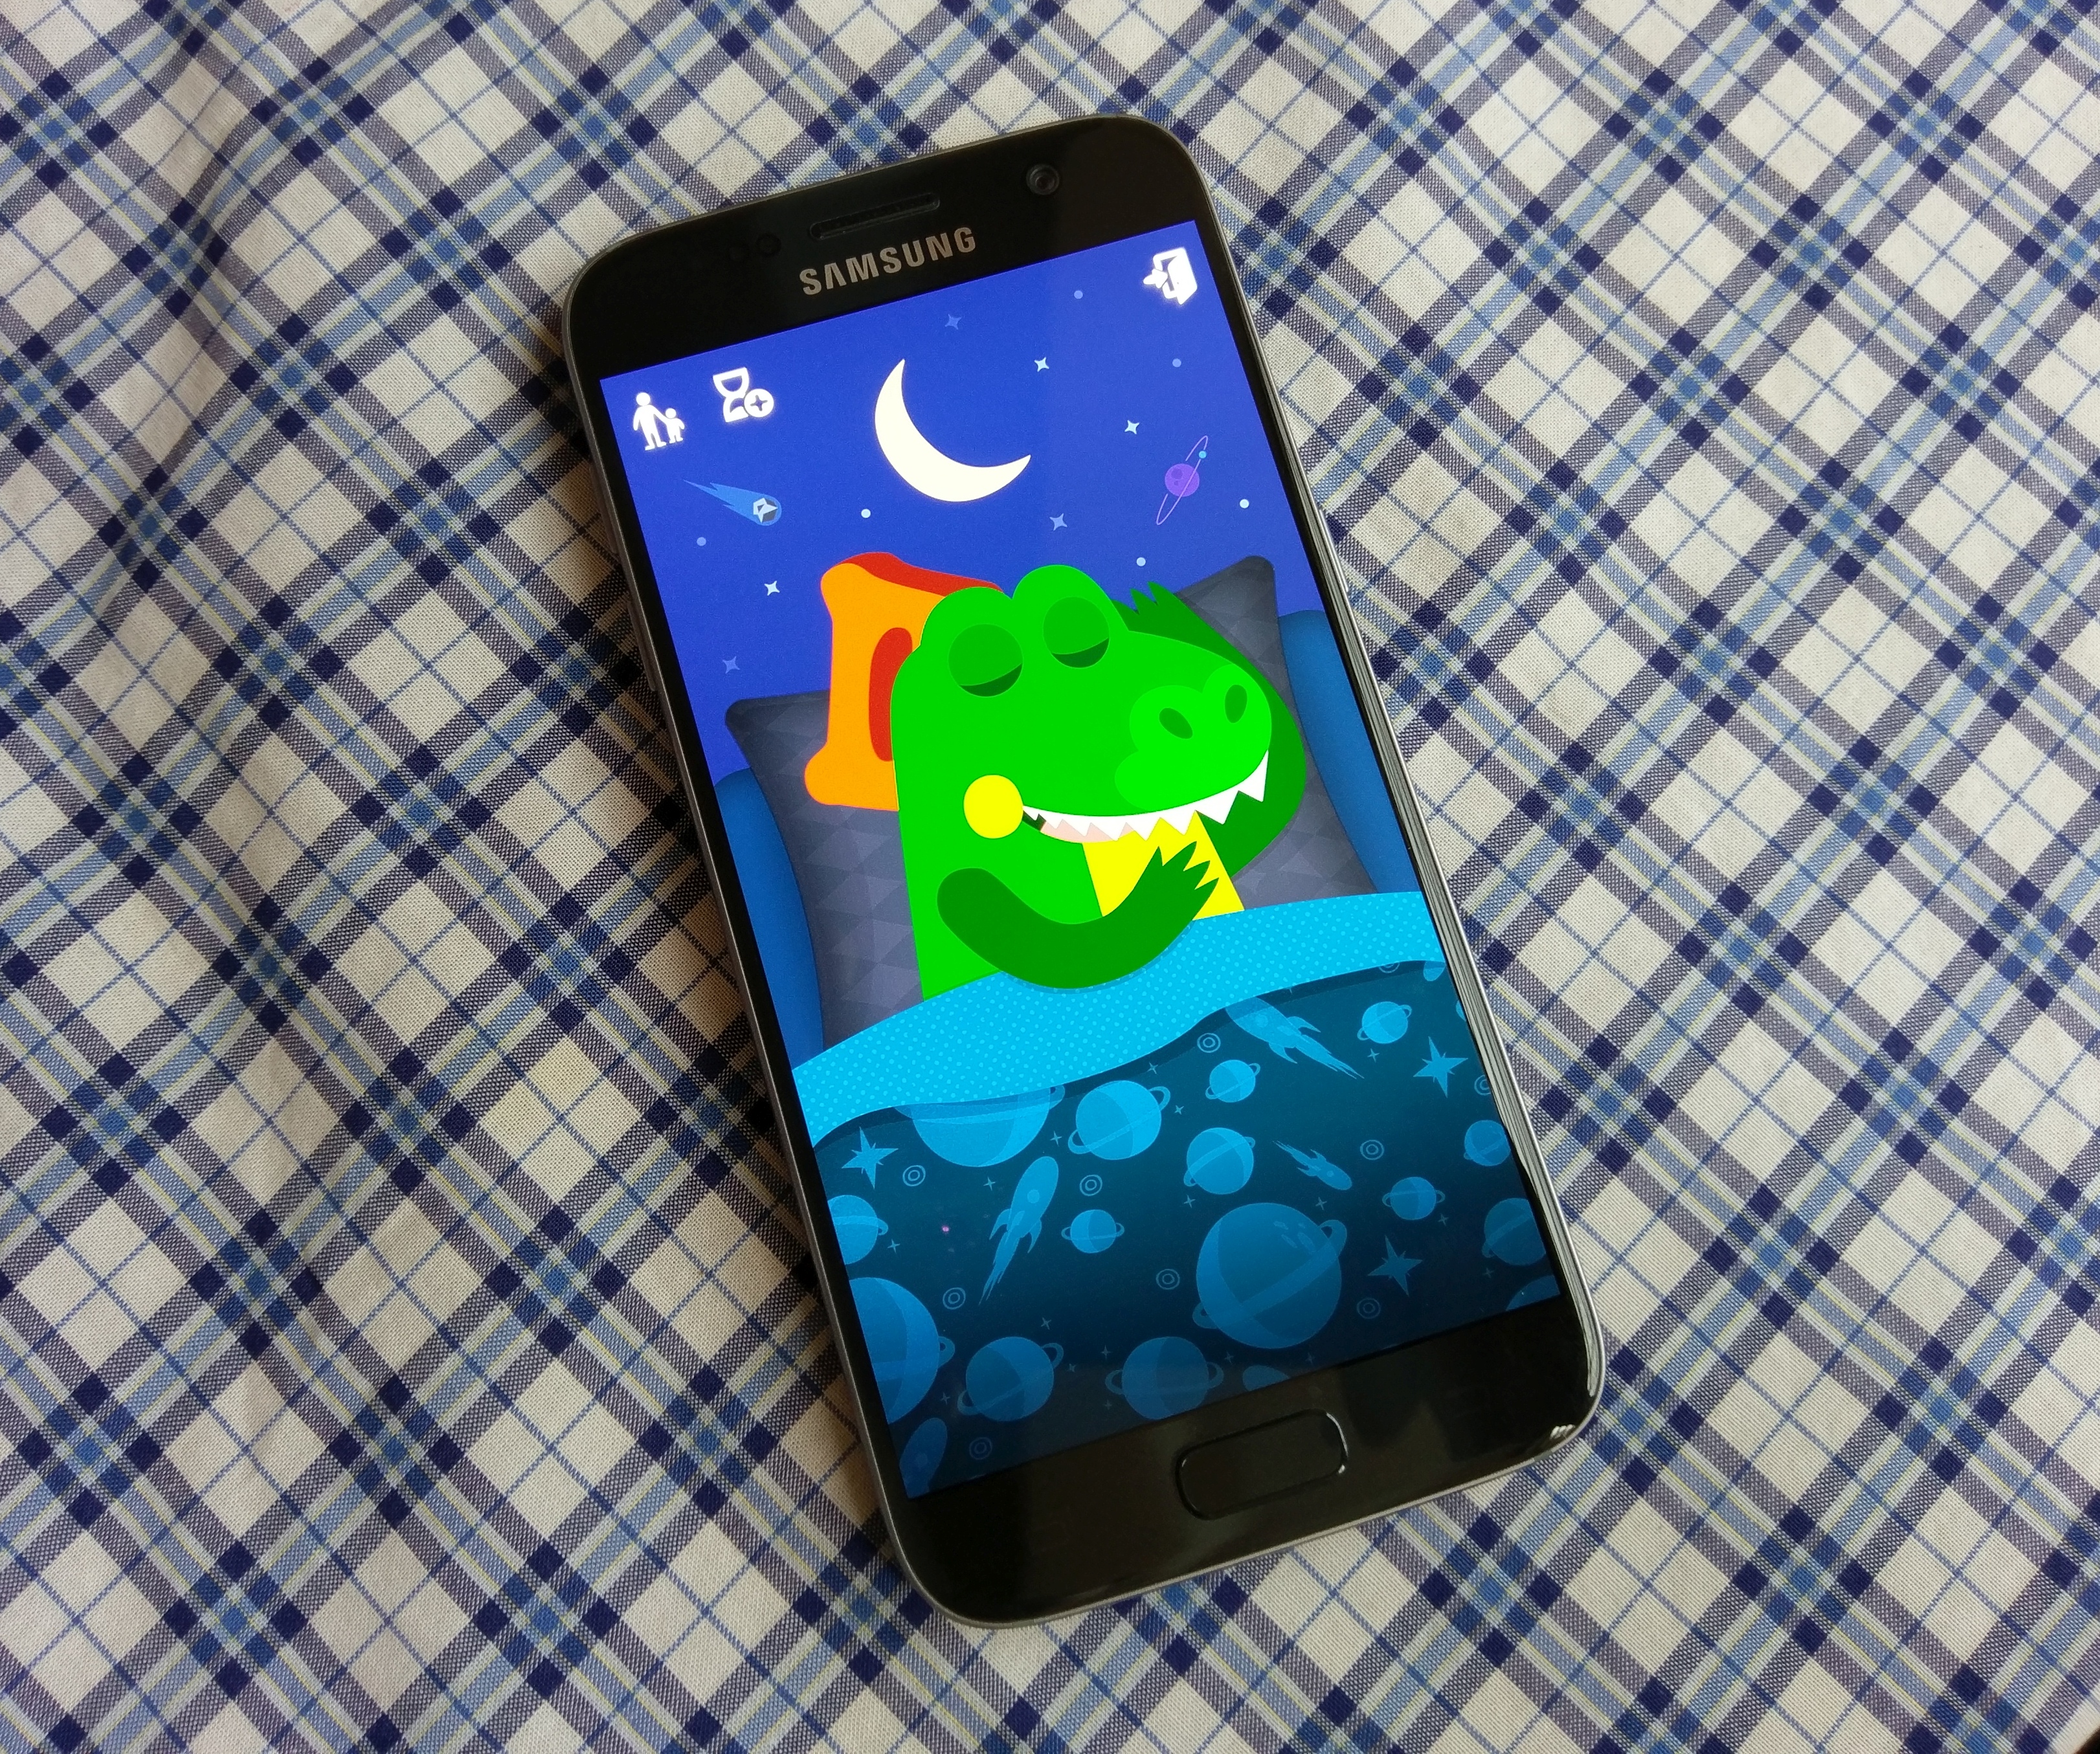 Wydziel przestrzeń na aplikacje dla dzieci i trzymaj je z dala od swoich danych. Bez stresu - Kids Mode w Samsungu Galaxy S7 - 90sekund.pl